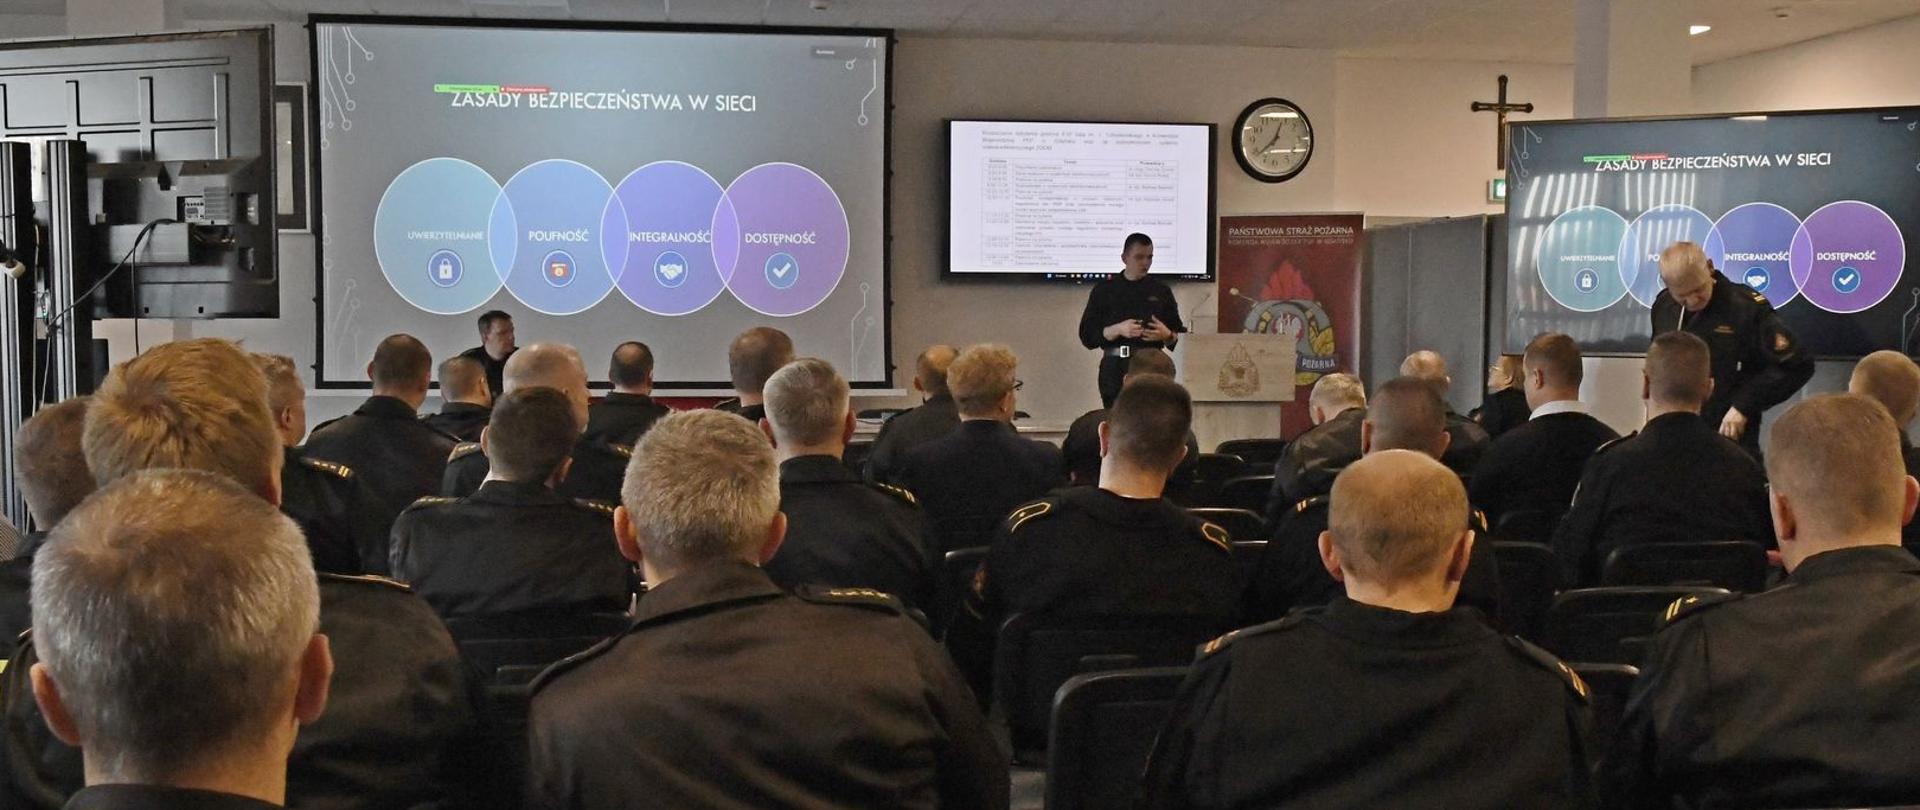 Zdjęcie przedstawia funkcjonariuszy uczestniczących w szkoleniu oraz funkcjonariusza Komendy Wojewódzkiej PSP prowadzącego spotkanie.. Na zdjęciu widać slajd z prezentacji dot. bezpieczeństwa w sieci.